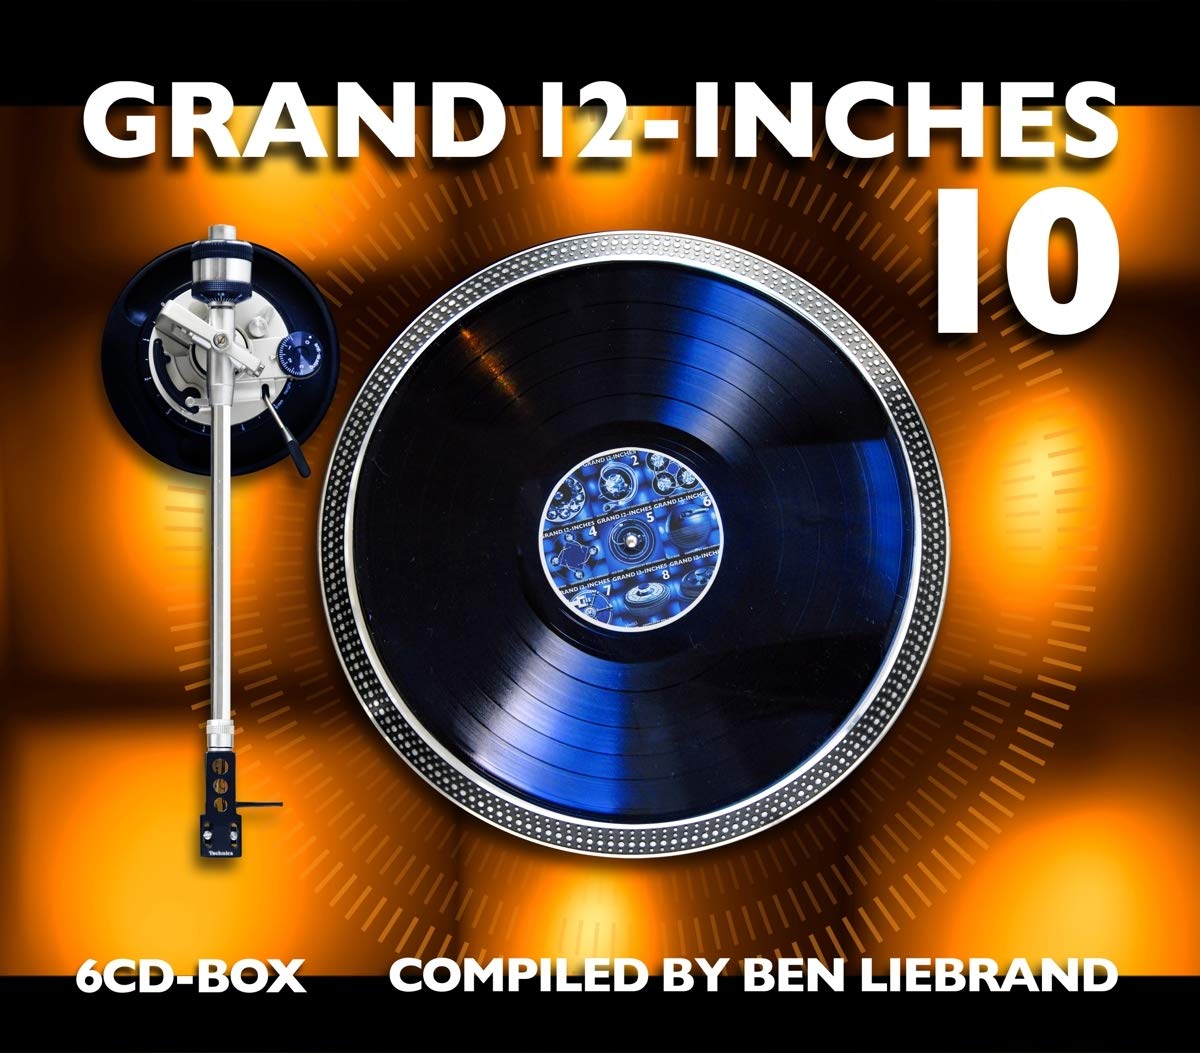 Grand 12 Inches Vol 10